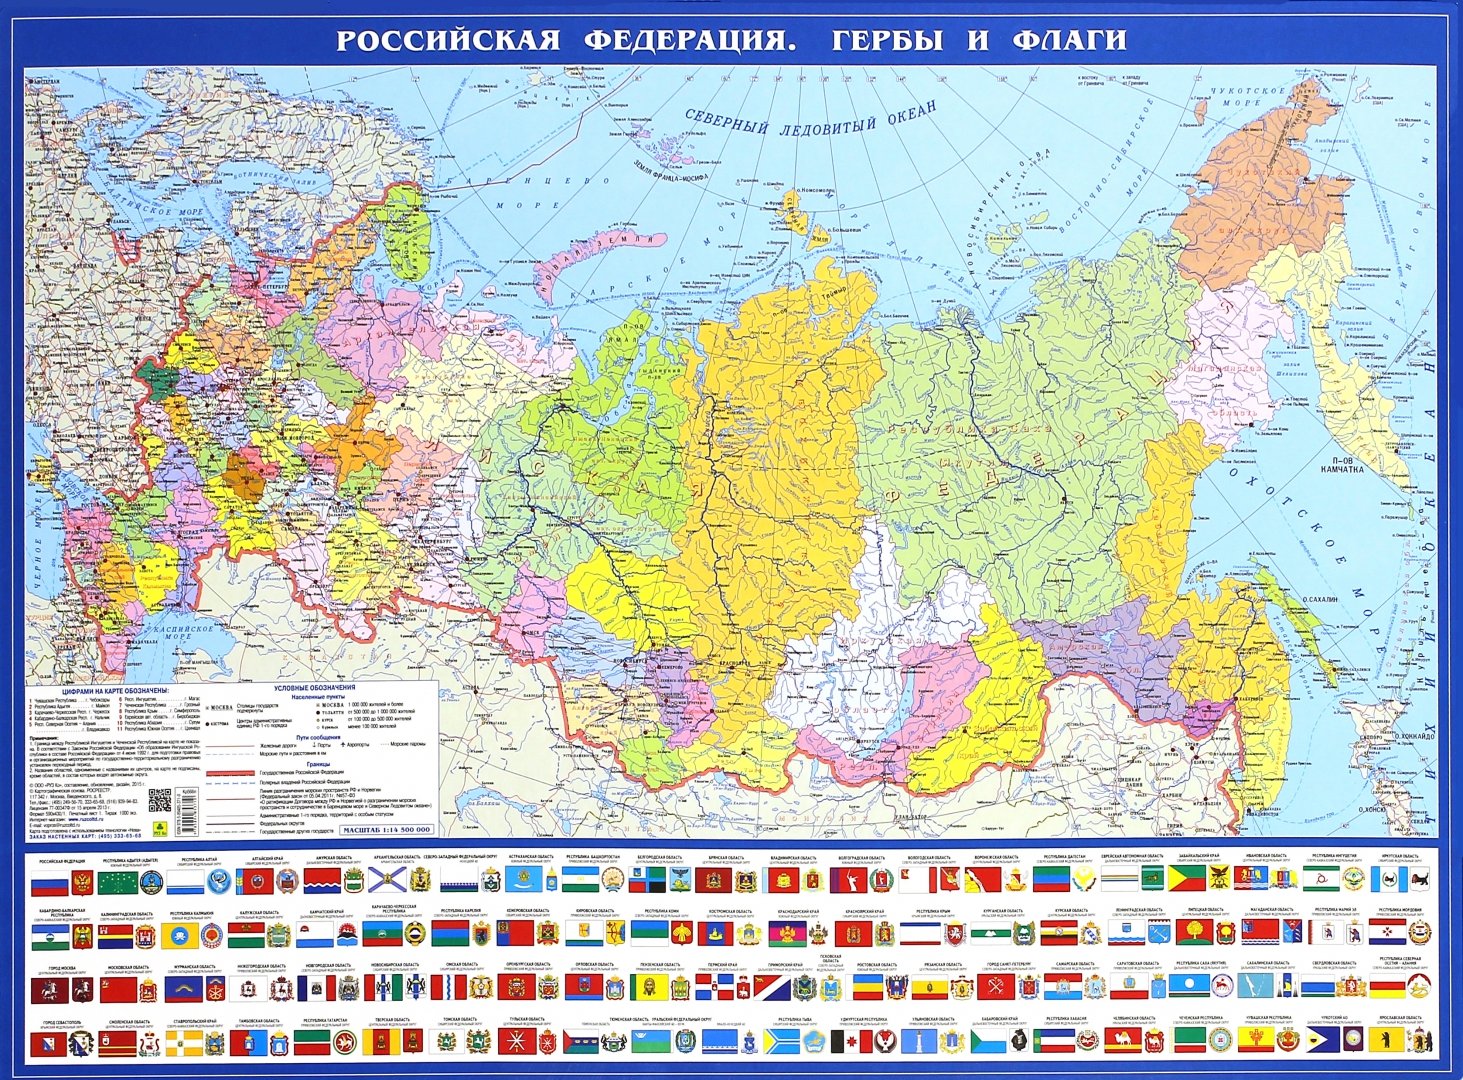 Иллюстрация 1 из 5 для Политическая карта Российская Федерация. Гербы и флаги | Лабиринт - книги. Источник: Лабиринт